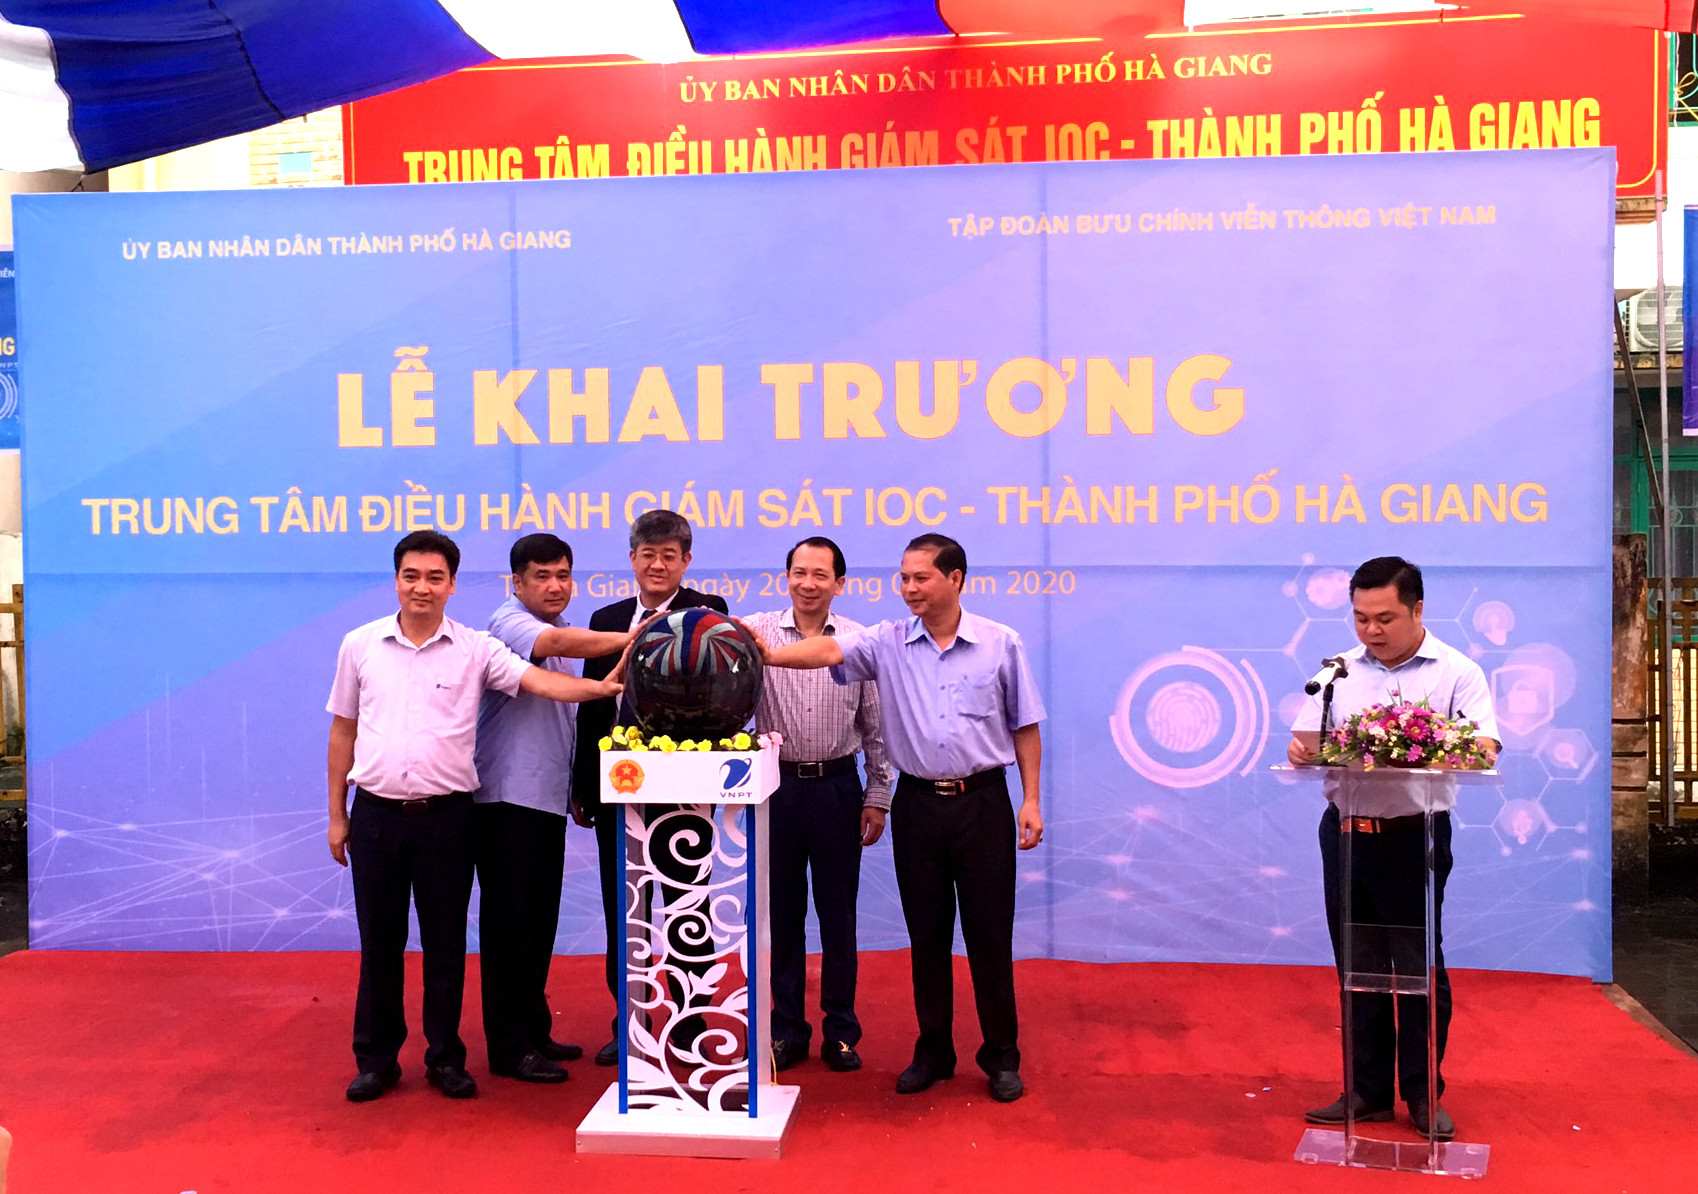 VNPT hỗ trợ Hà Giang 1,5 tỷ đồng xây dựng Trung tâm điều hành giám sát thông minh  - Ảnh 1.